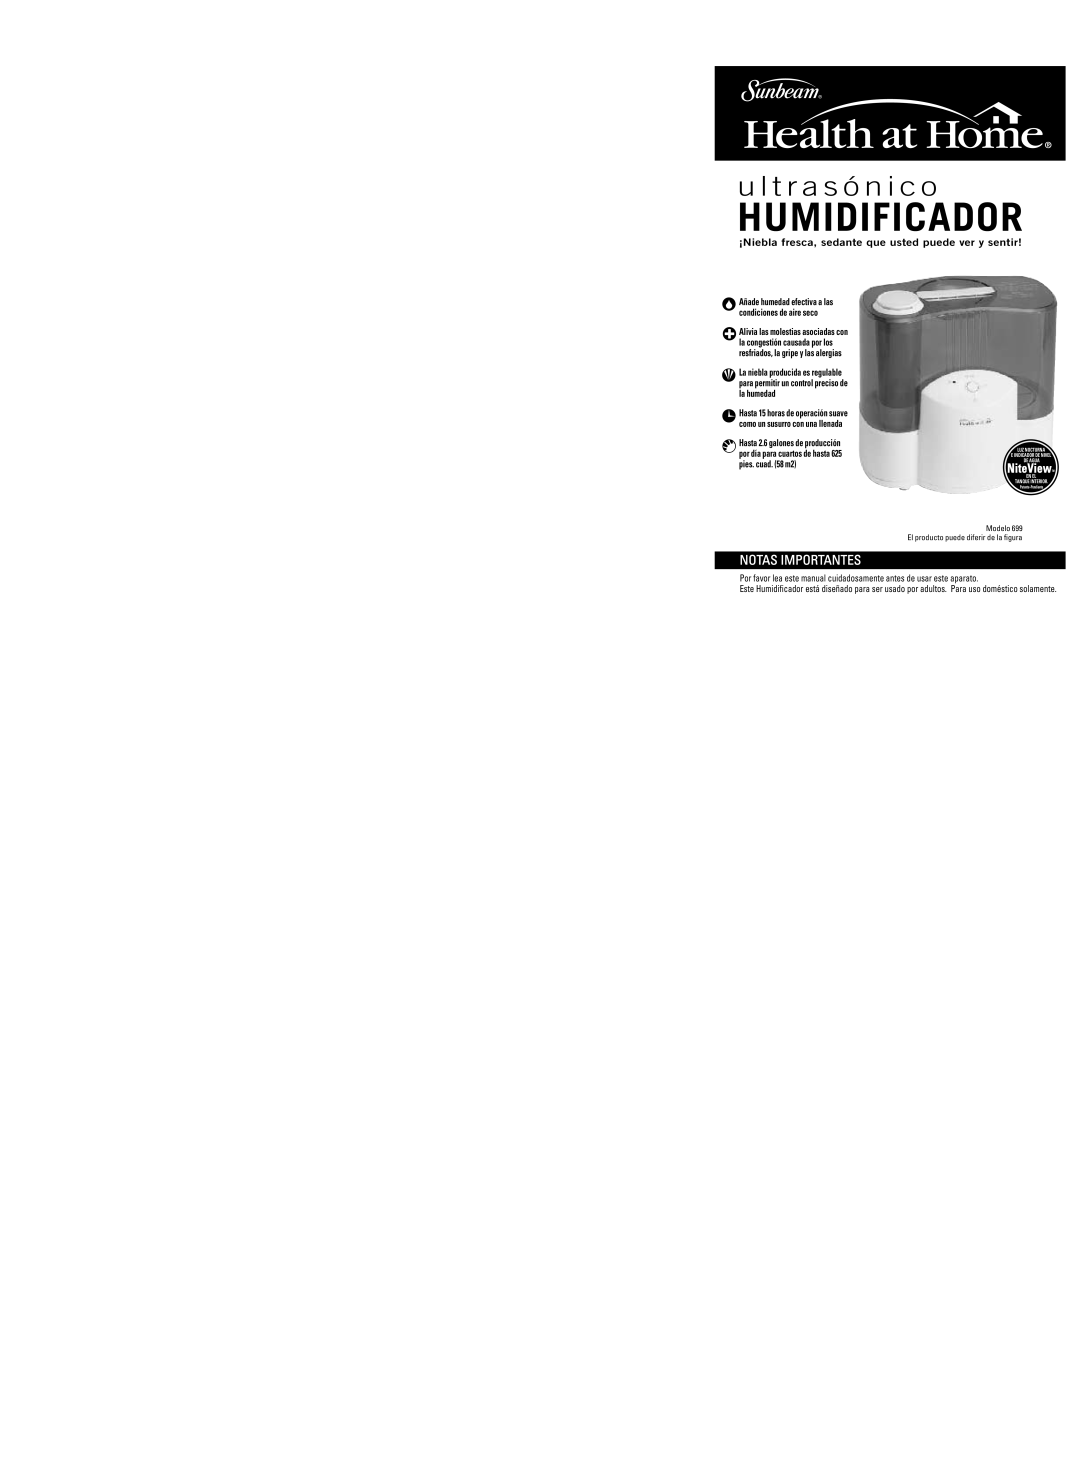 Sunbeam HUMIDIFIERCool warranty Humidificador, u l t r a s ó n i c o, Notas Importantes, NiteView 